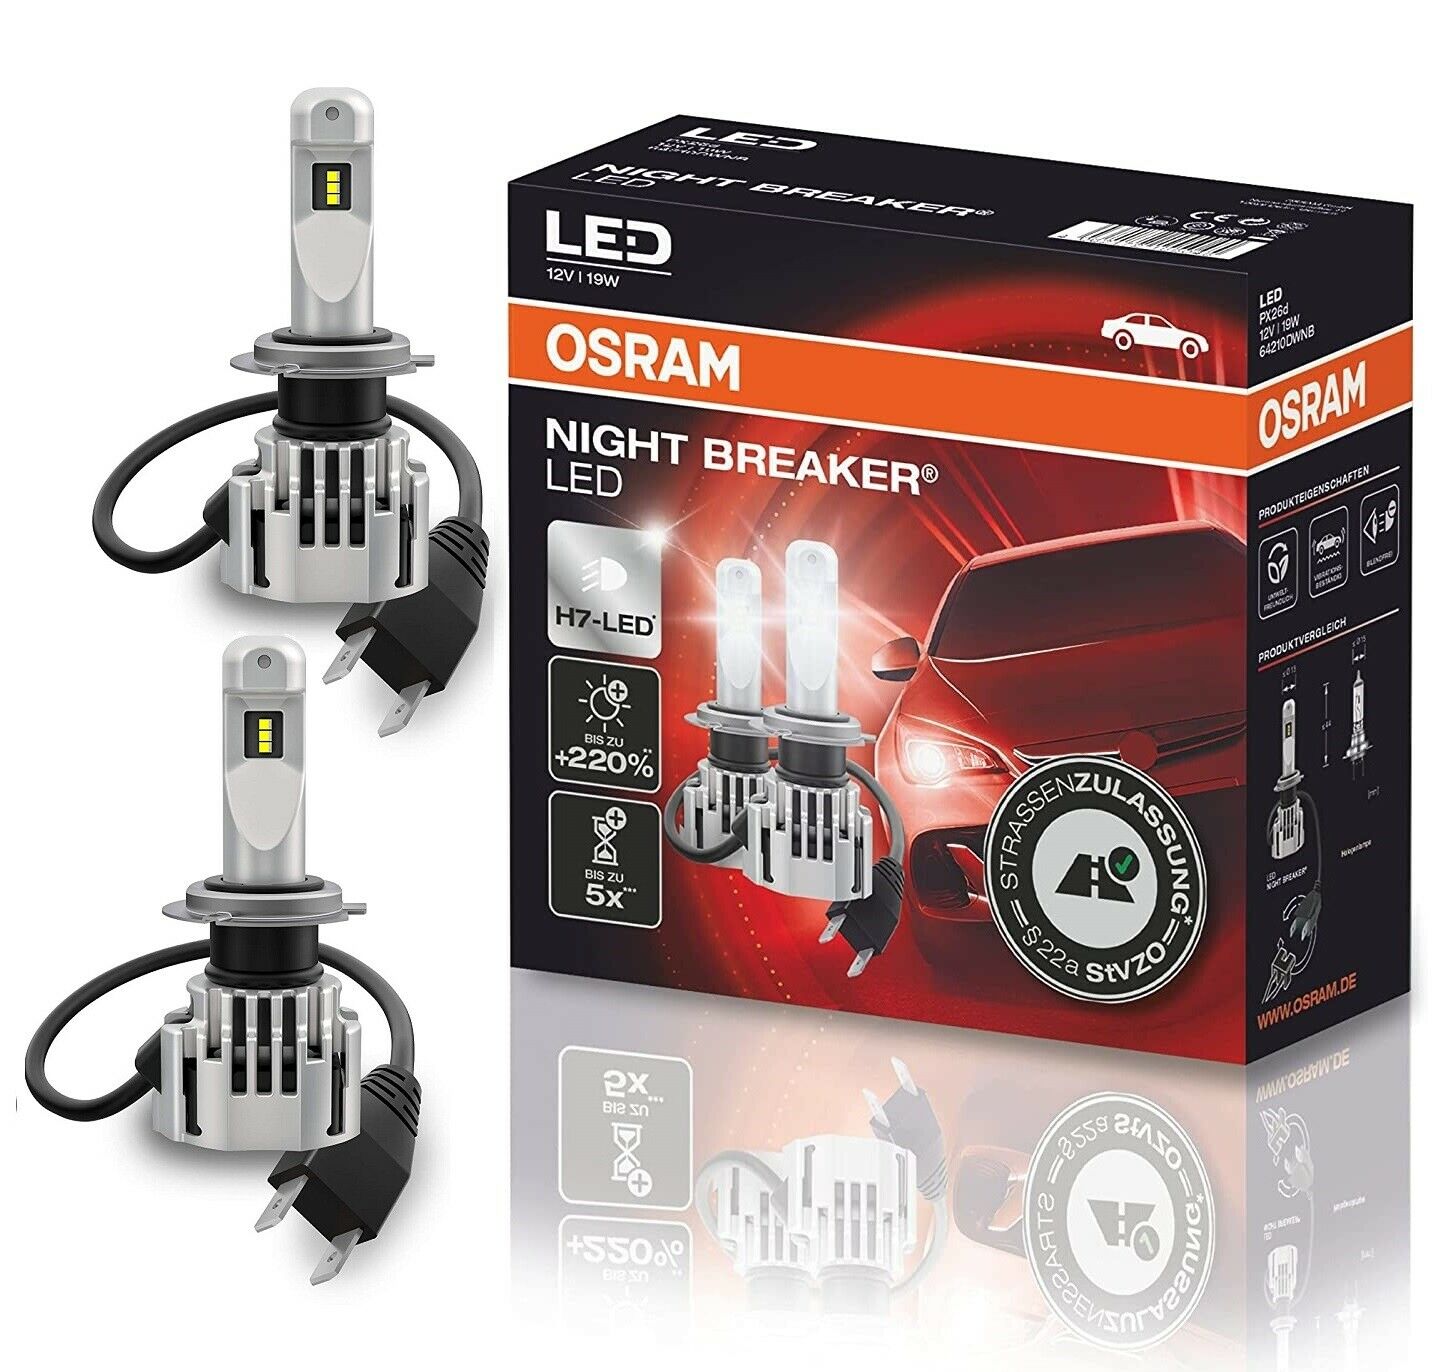 OSRAM Night Breaker H7 LED Lampen +220% Scheinwerfer für Toyota